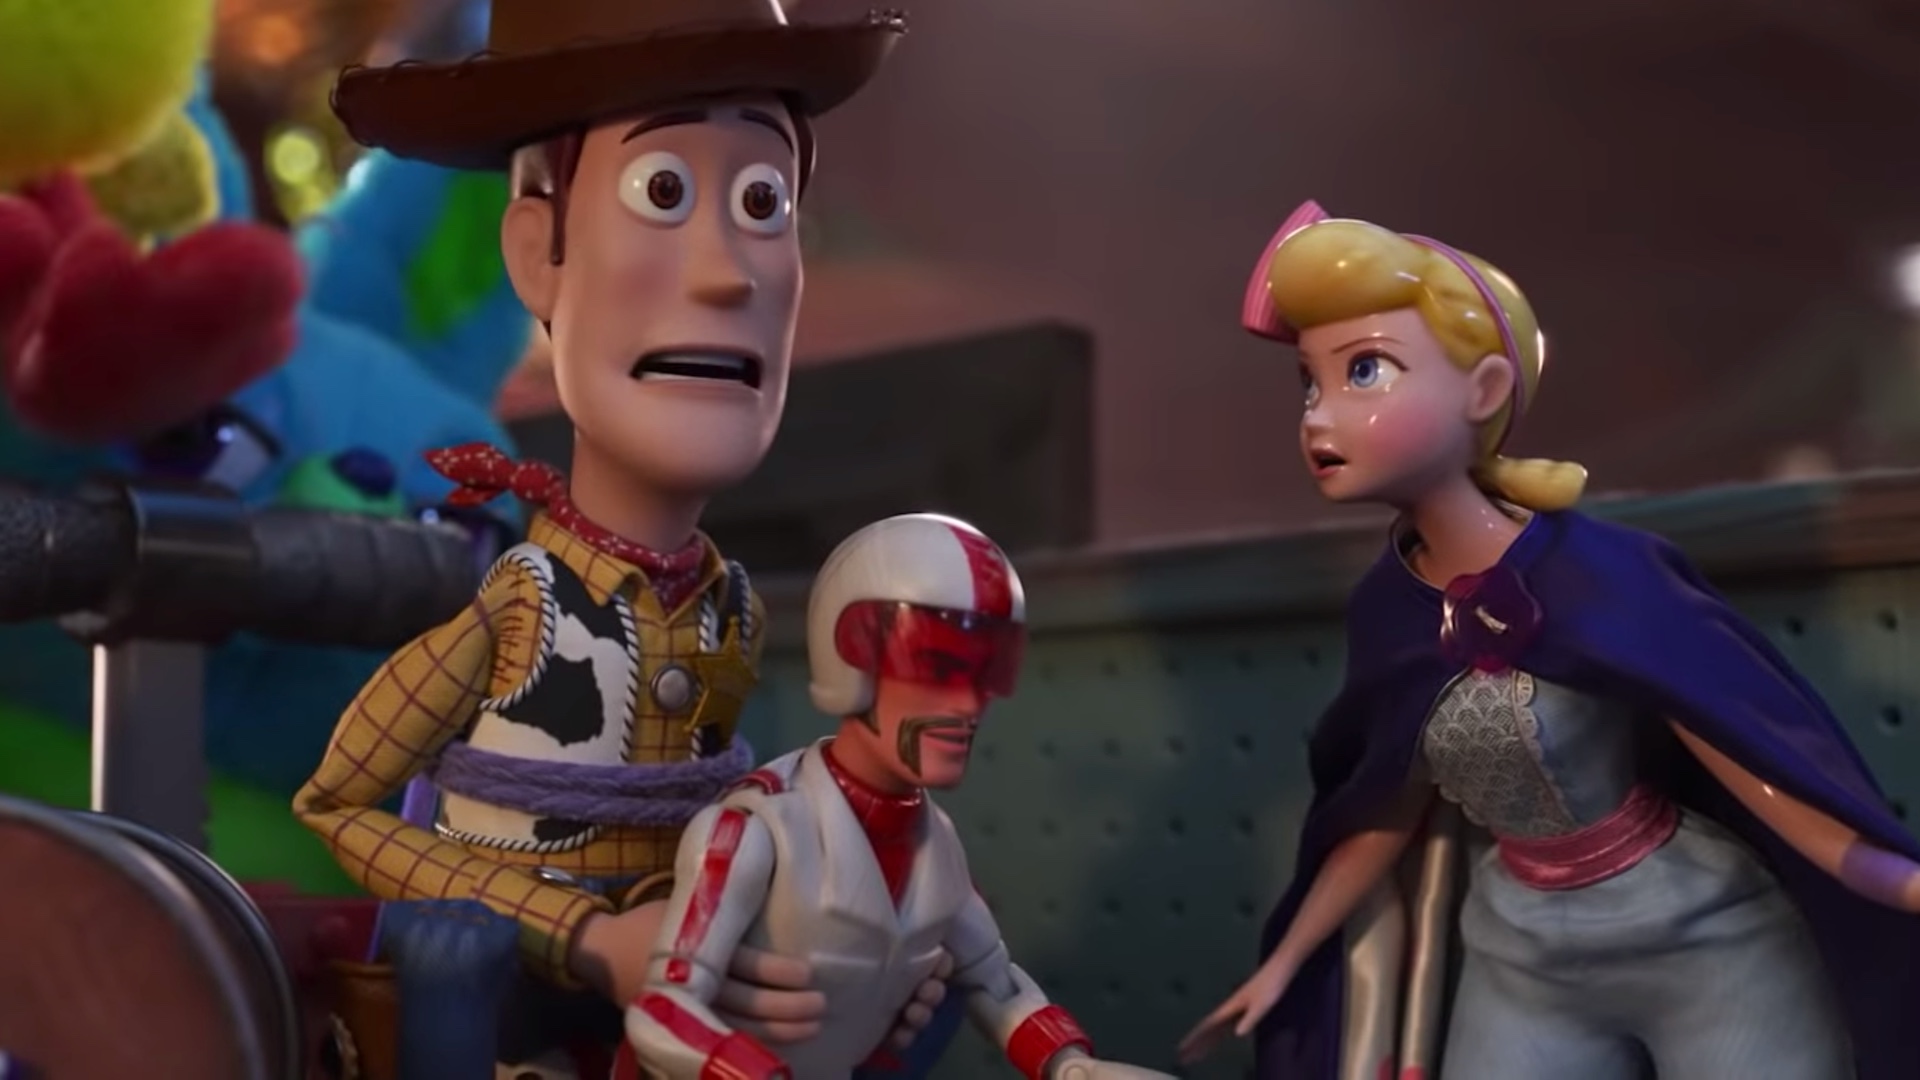 Bildergebnis für Toy Story 4 photos